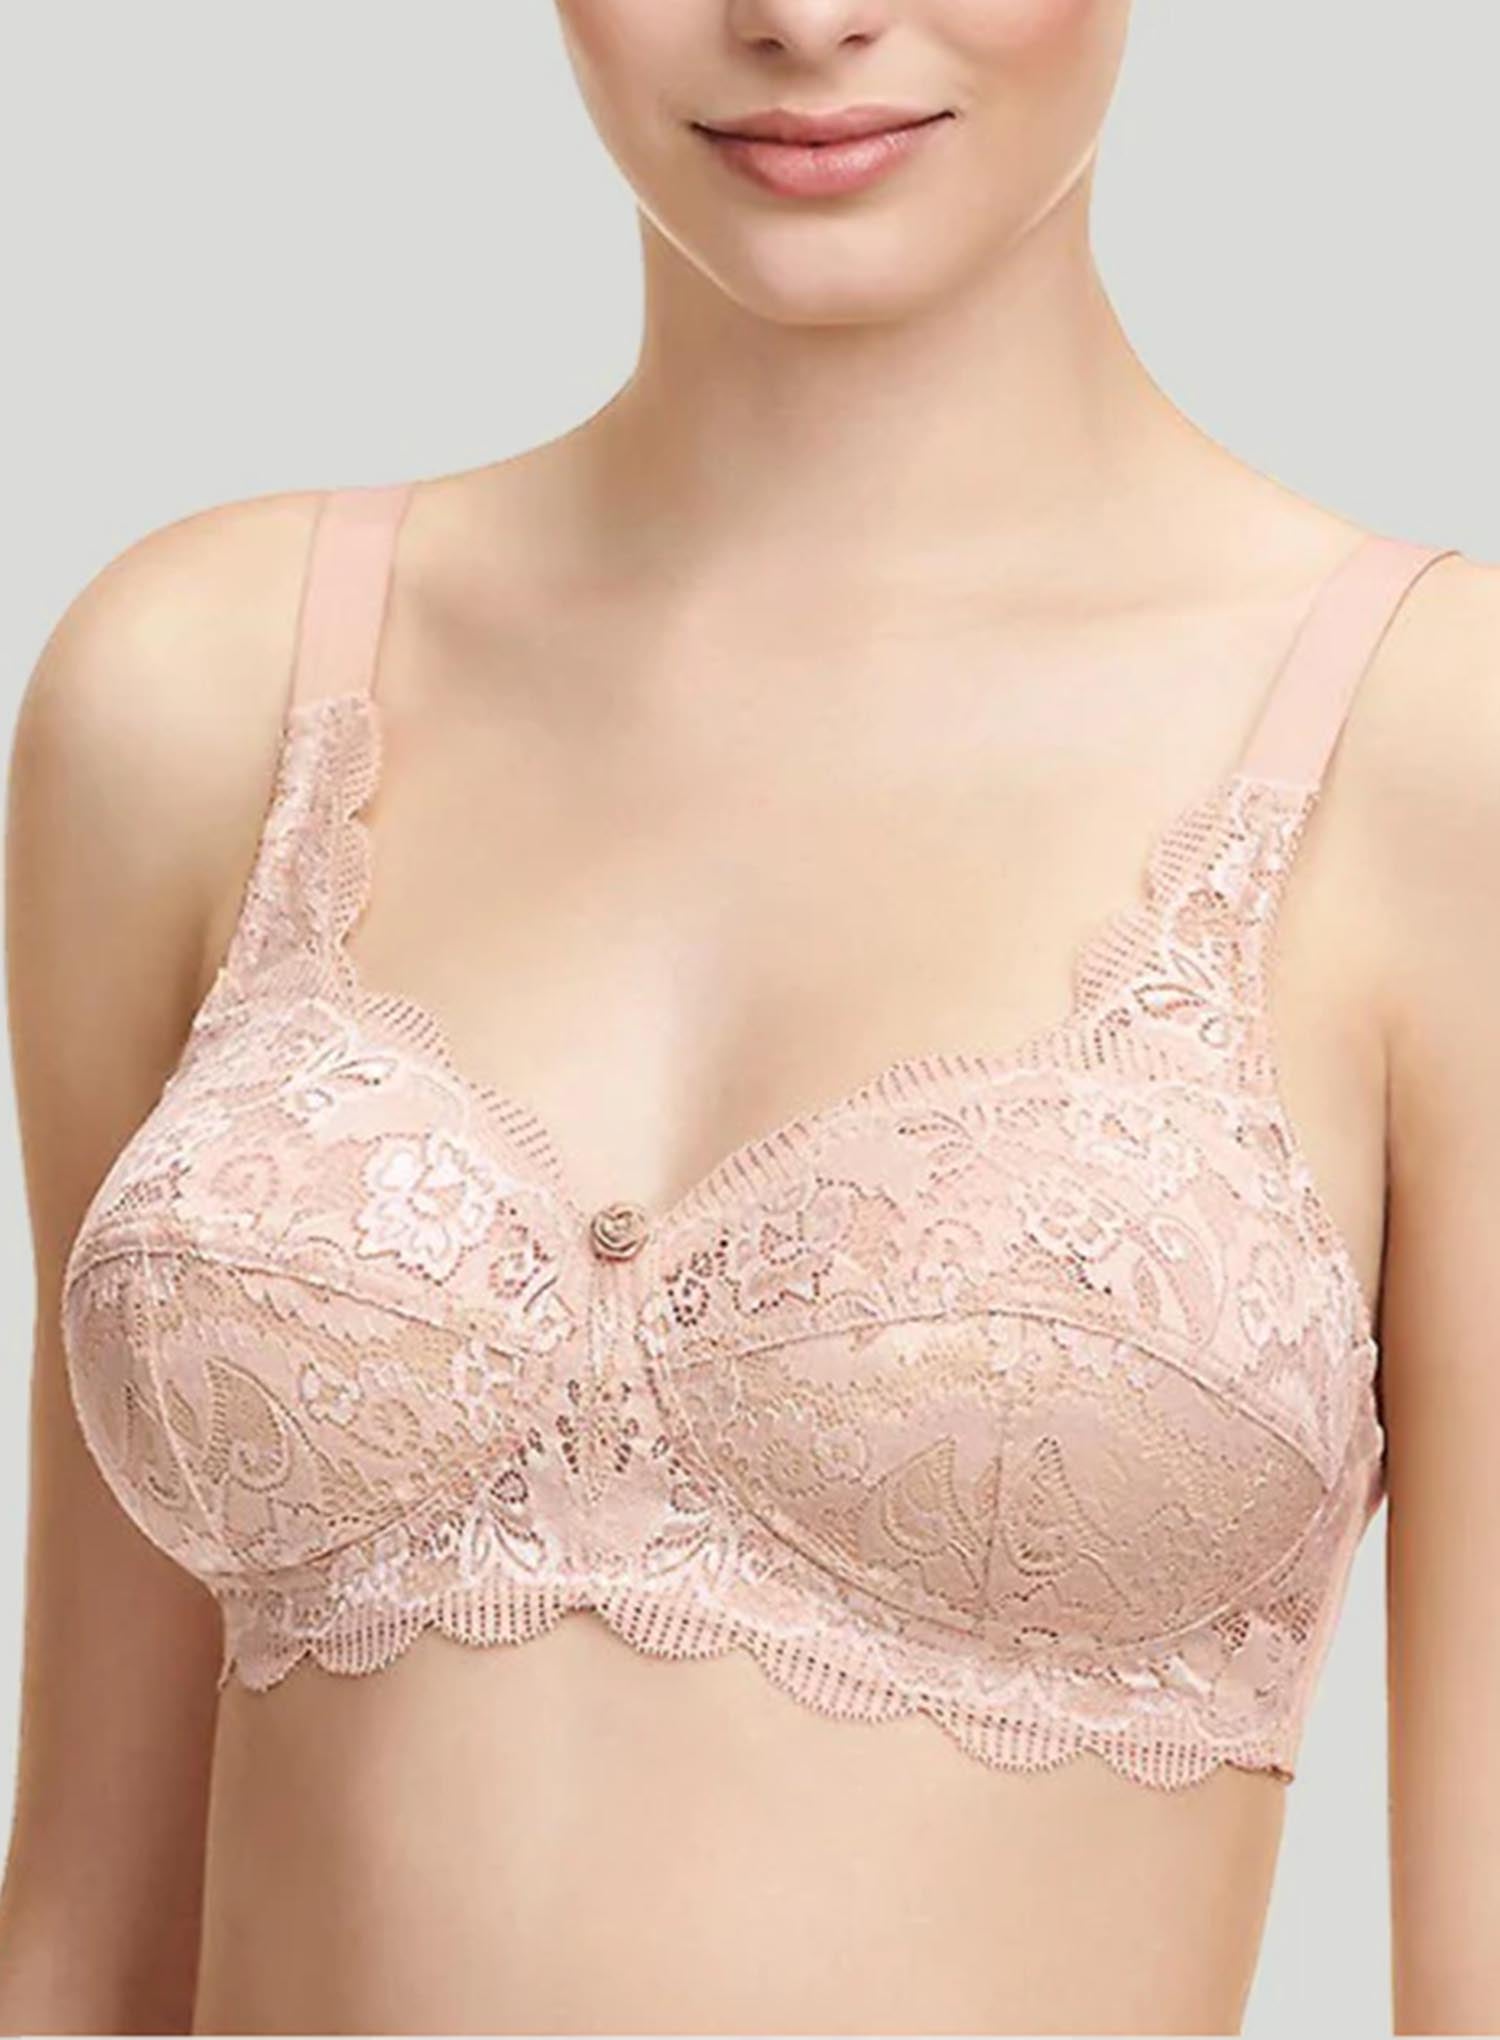 Best Wire Free Bras For Australian Women with Large Breasts – DeBra's